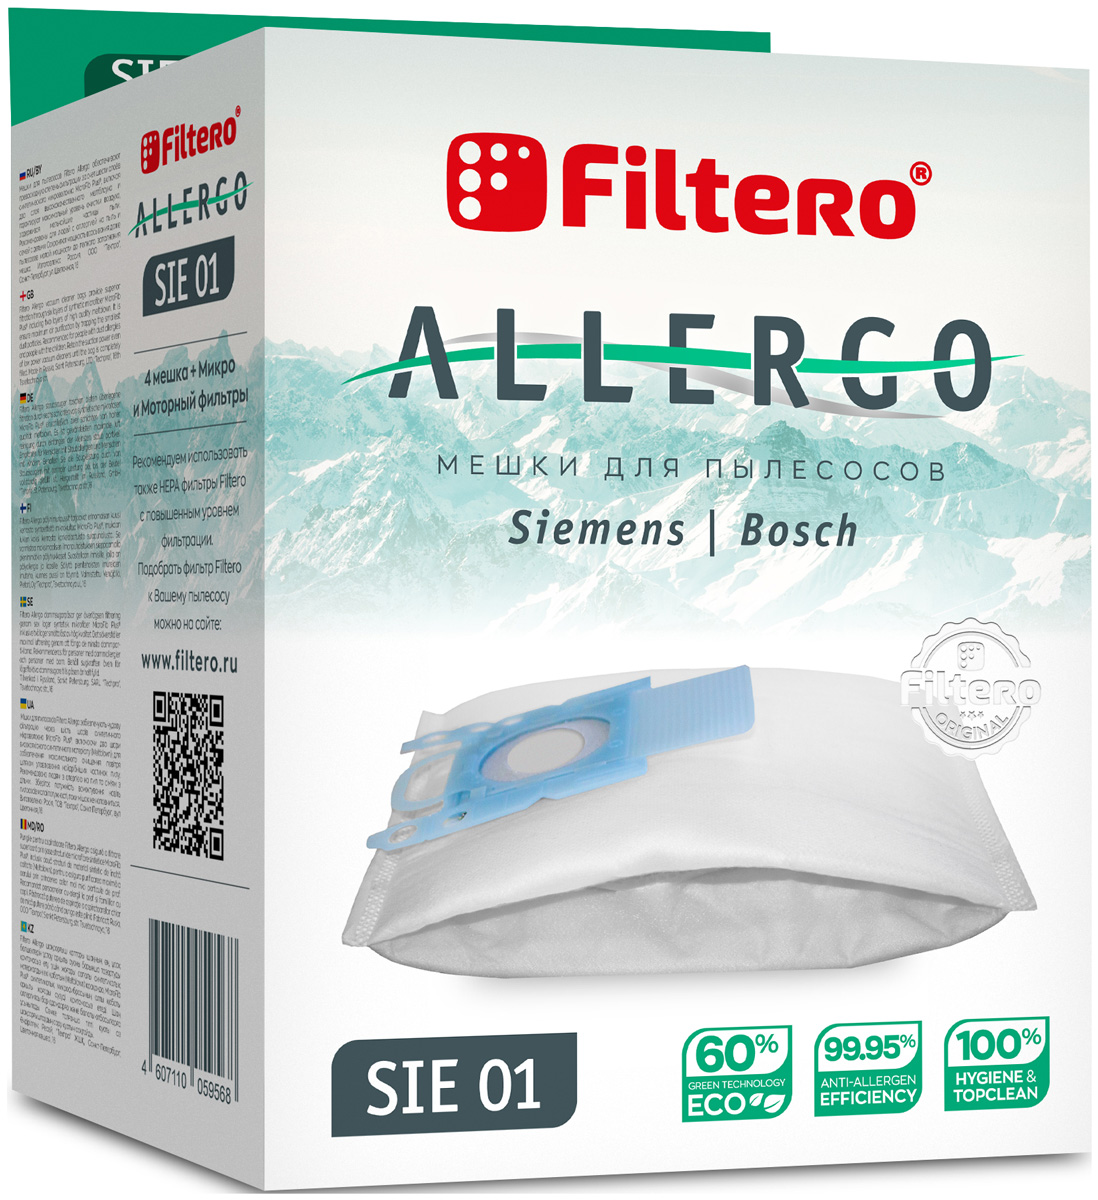 Пылесборники Filtero SIE 01 Allergo 4 шт. + моторный фильтр и микрофильтр мешок для пылесоса filtero sie 01 4 allergo